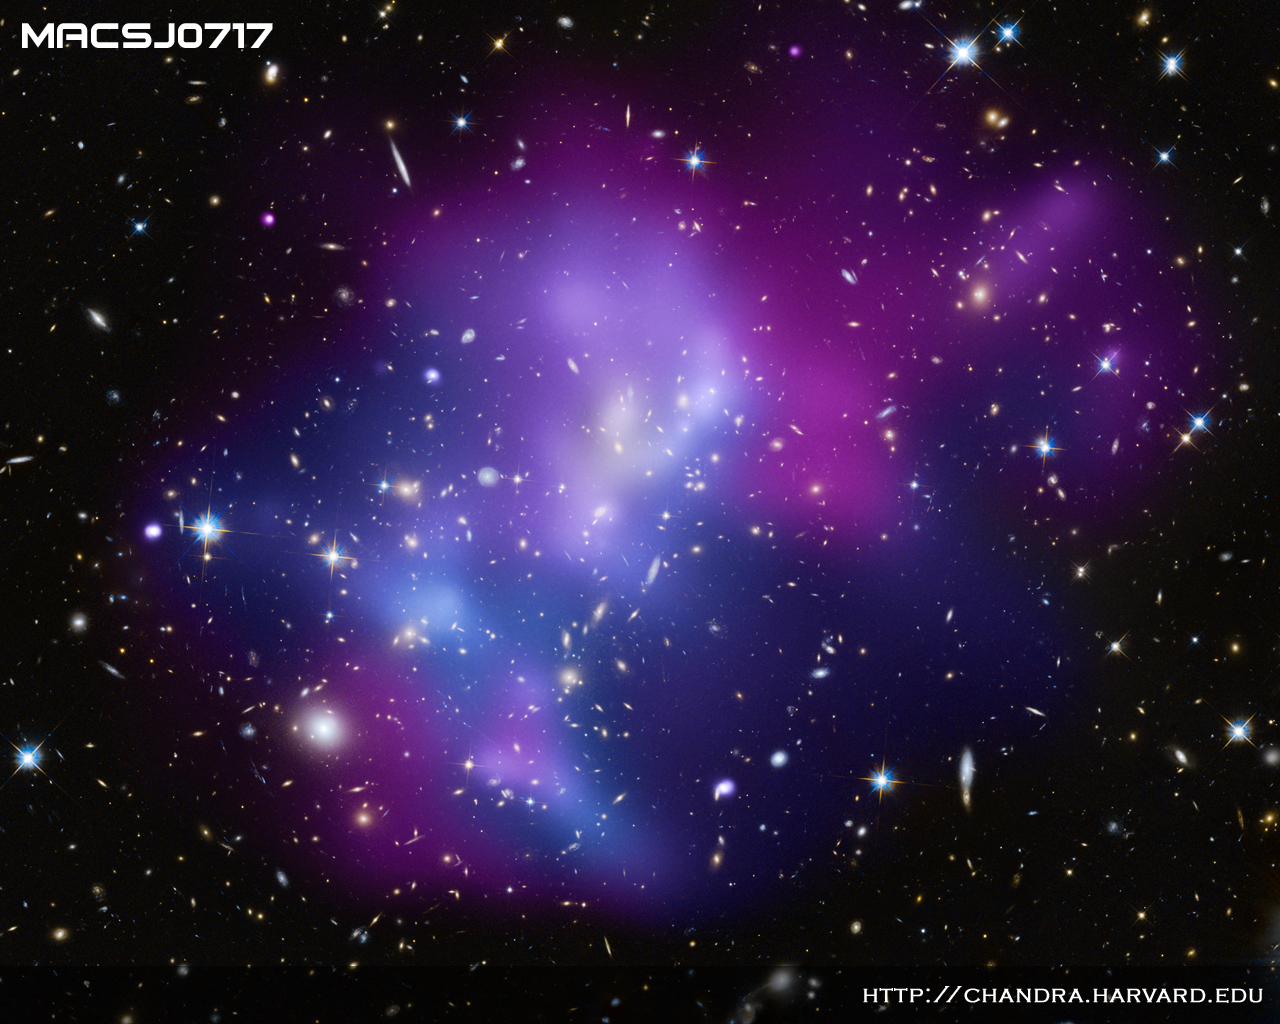 Thiên văn MACSJ0717.5+3745 được xem là một trong những hiện tượng lớn nhất trên vũ trụ. Để có một cái nhìn chân thật và rõ nét về thiên văn này, hãy xem những hình ảnh thiên văn thu thập từ những kính thiên vă tiên tiến nhất.